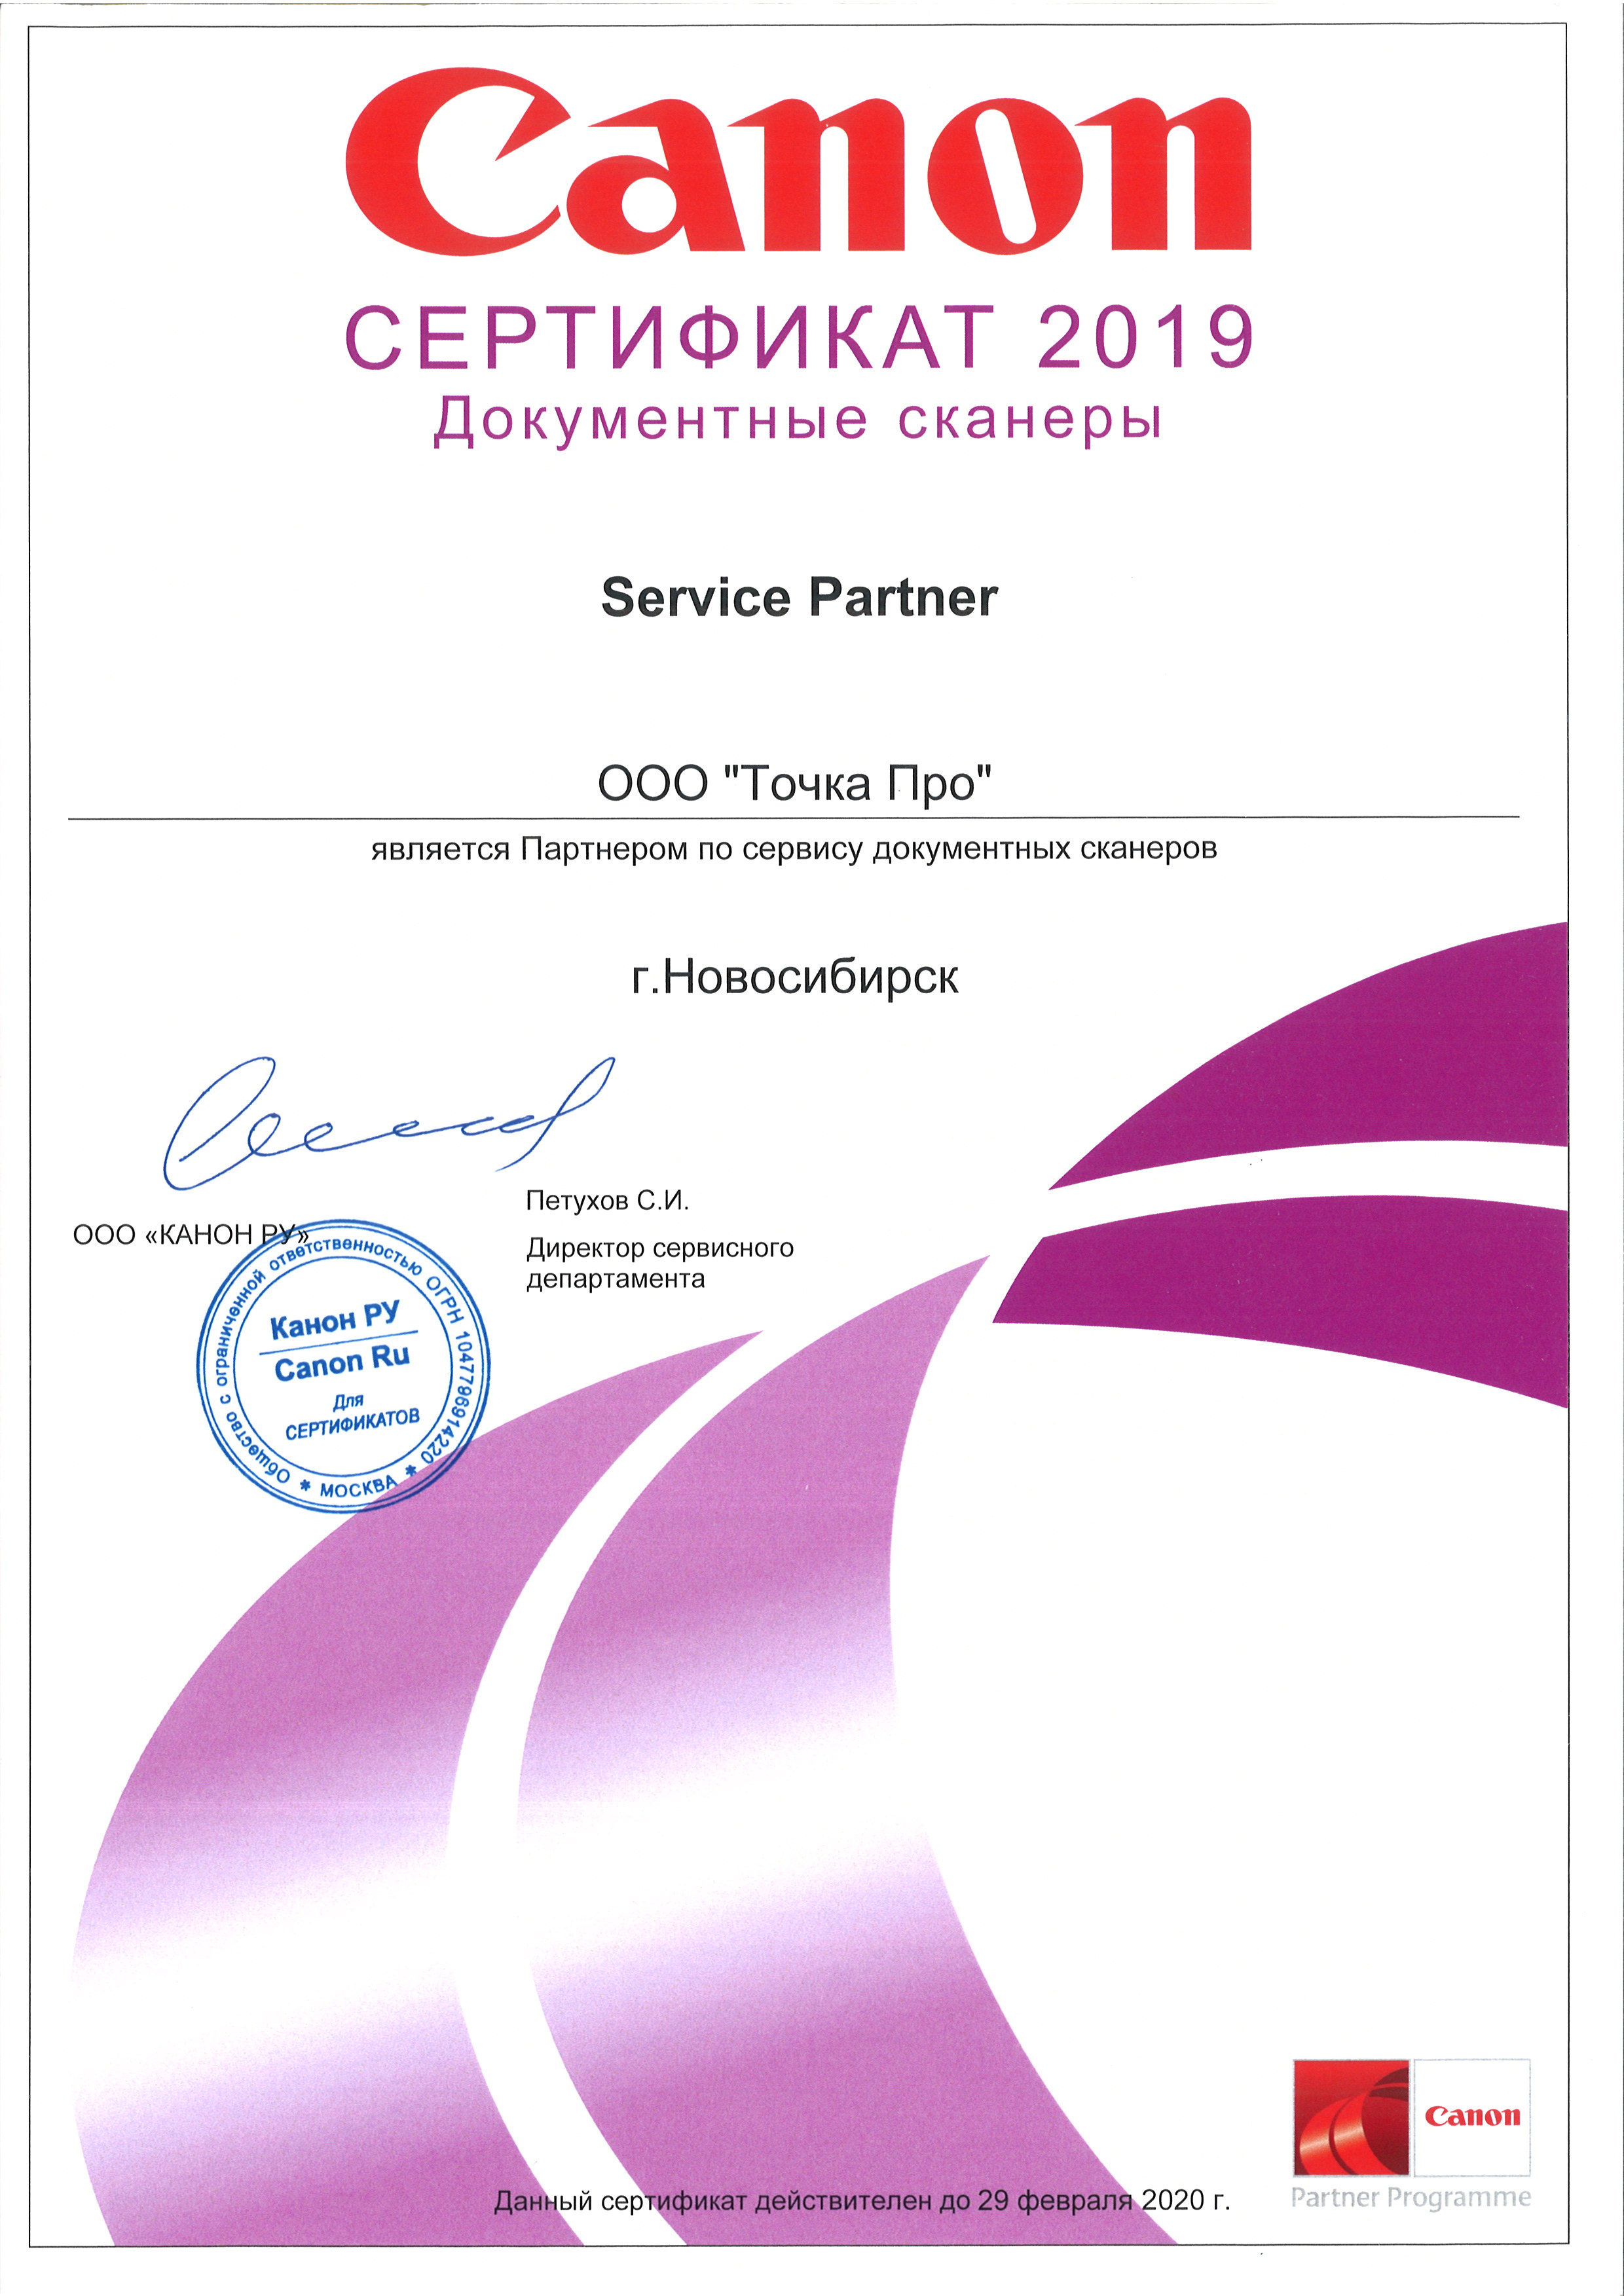 Сертификат партнёра Canon по сервисному обслуживанию и ремонту документных сканеров 2019